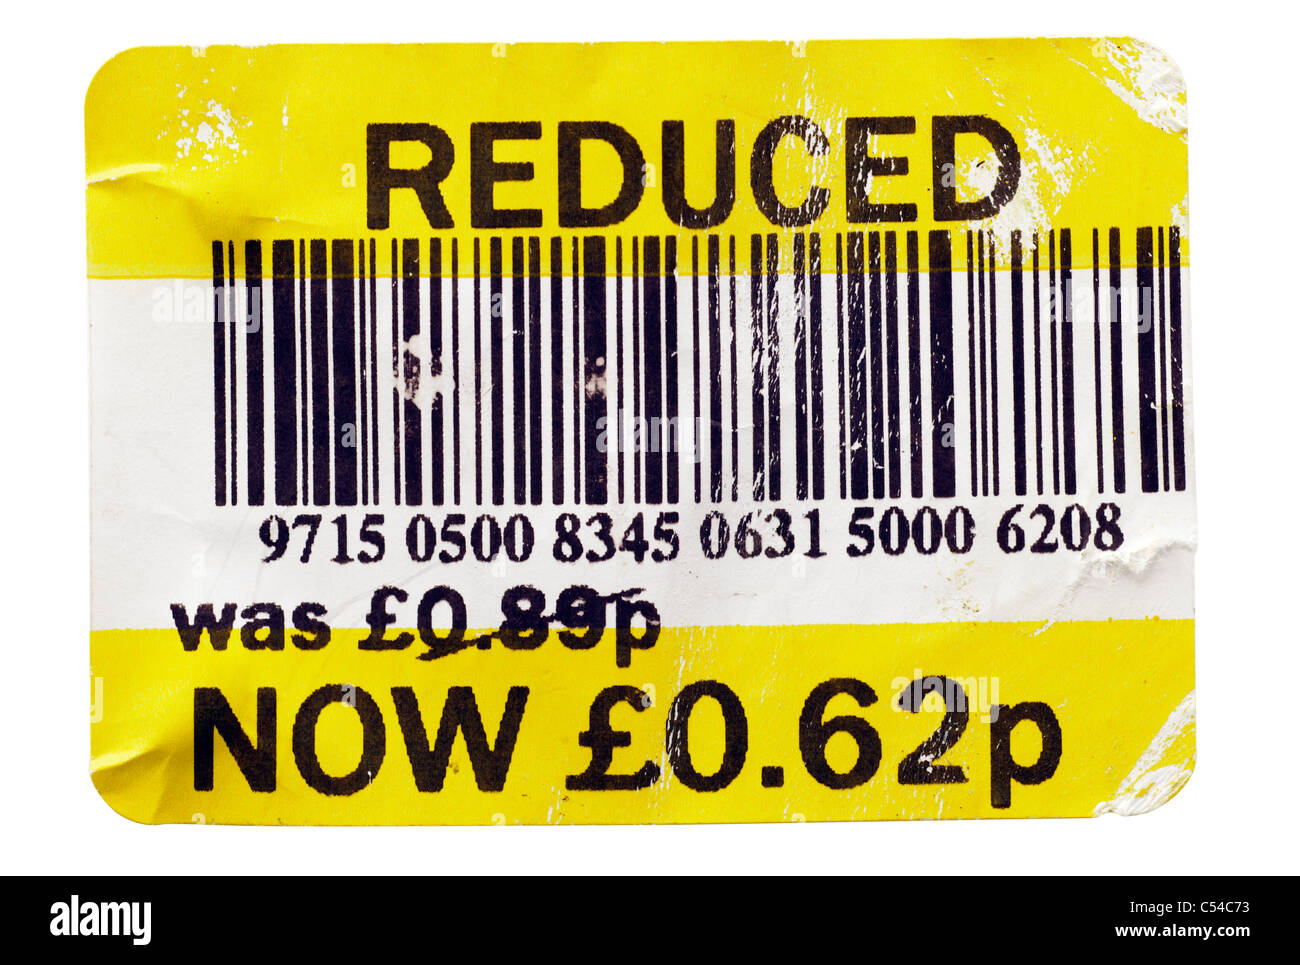 Tatty réduction supermarché label donnant un prix réduit à partir de 89 pence à 62 pence. Seulement ÉDITORIALE Banque D'Images